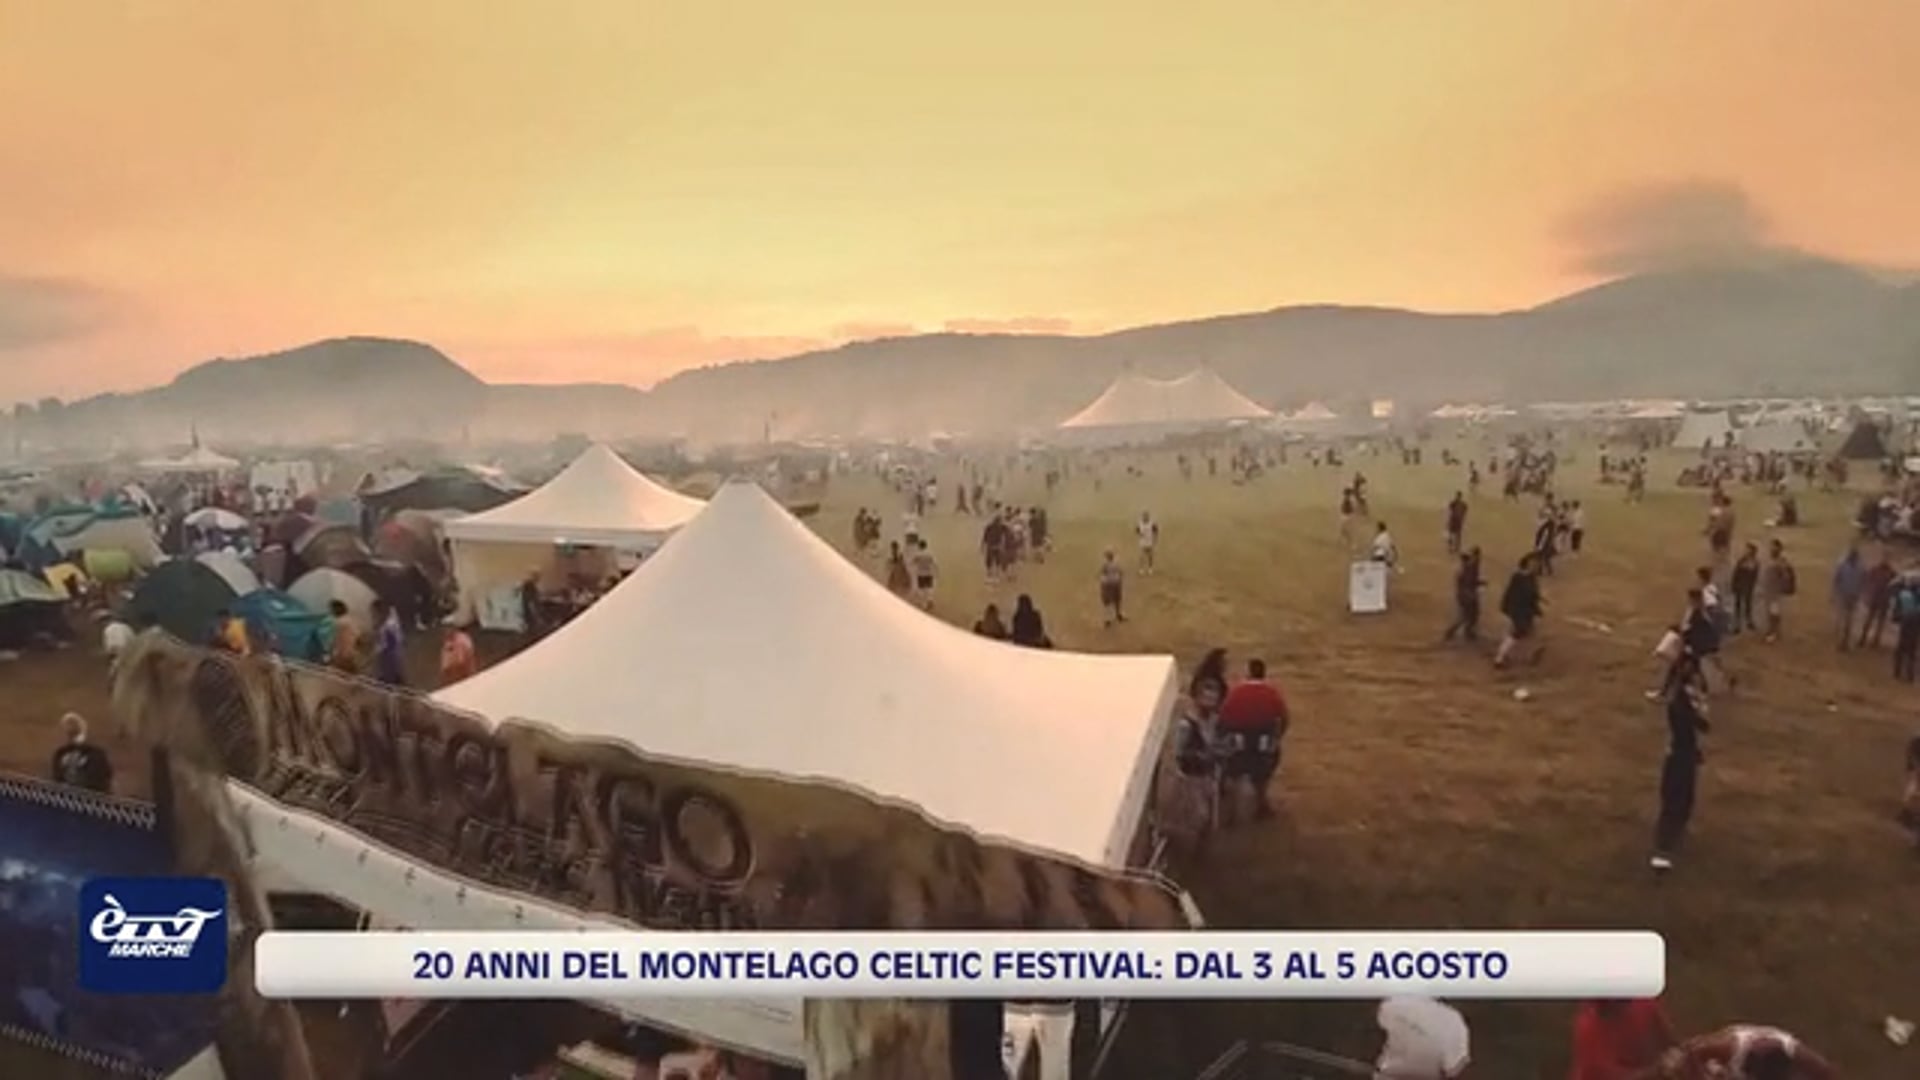 20 anni del Montelago Celtic Festival: dal 3 al 5 agosto - VIDEO